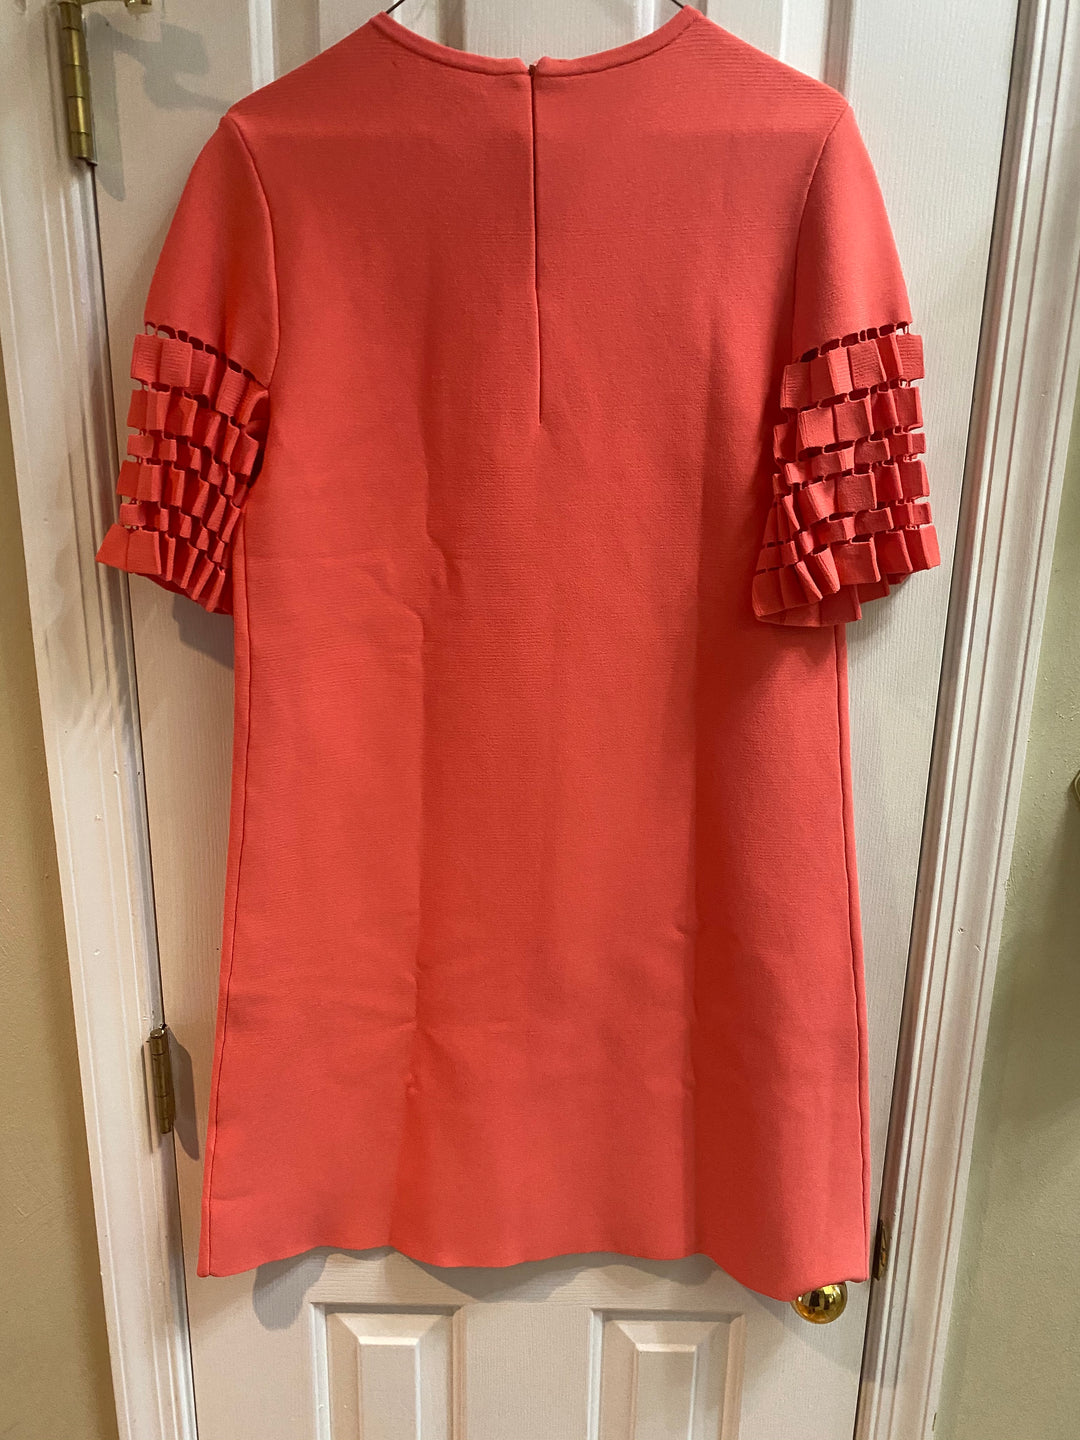 Lela Rose Accordian Detail Tunic Dress Size M